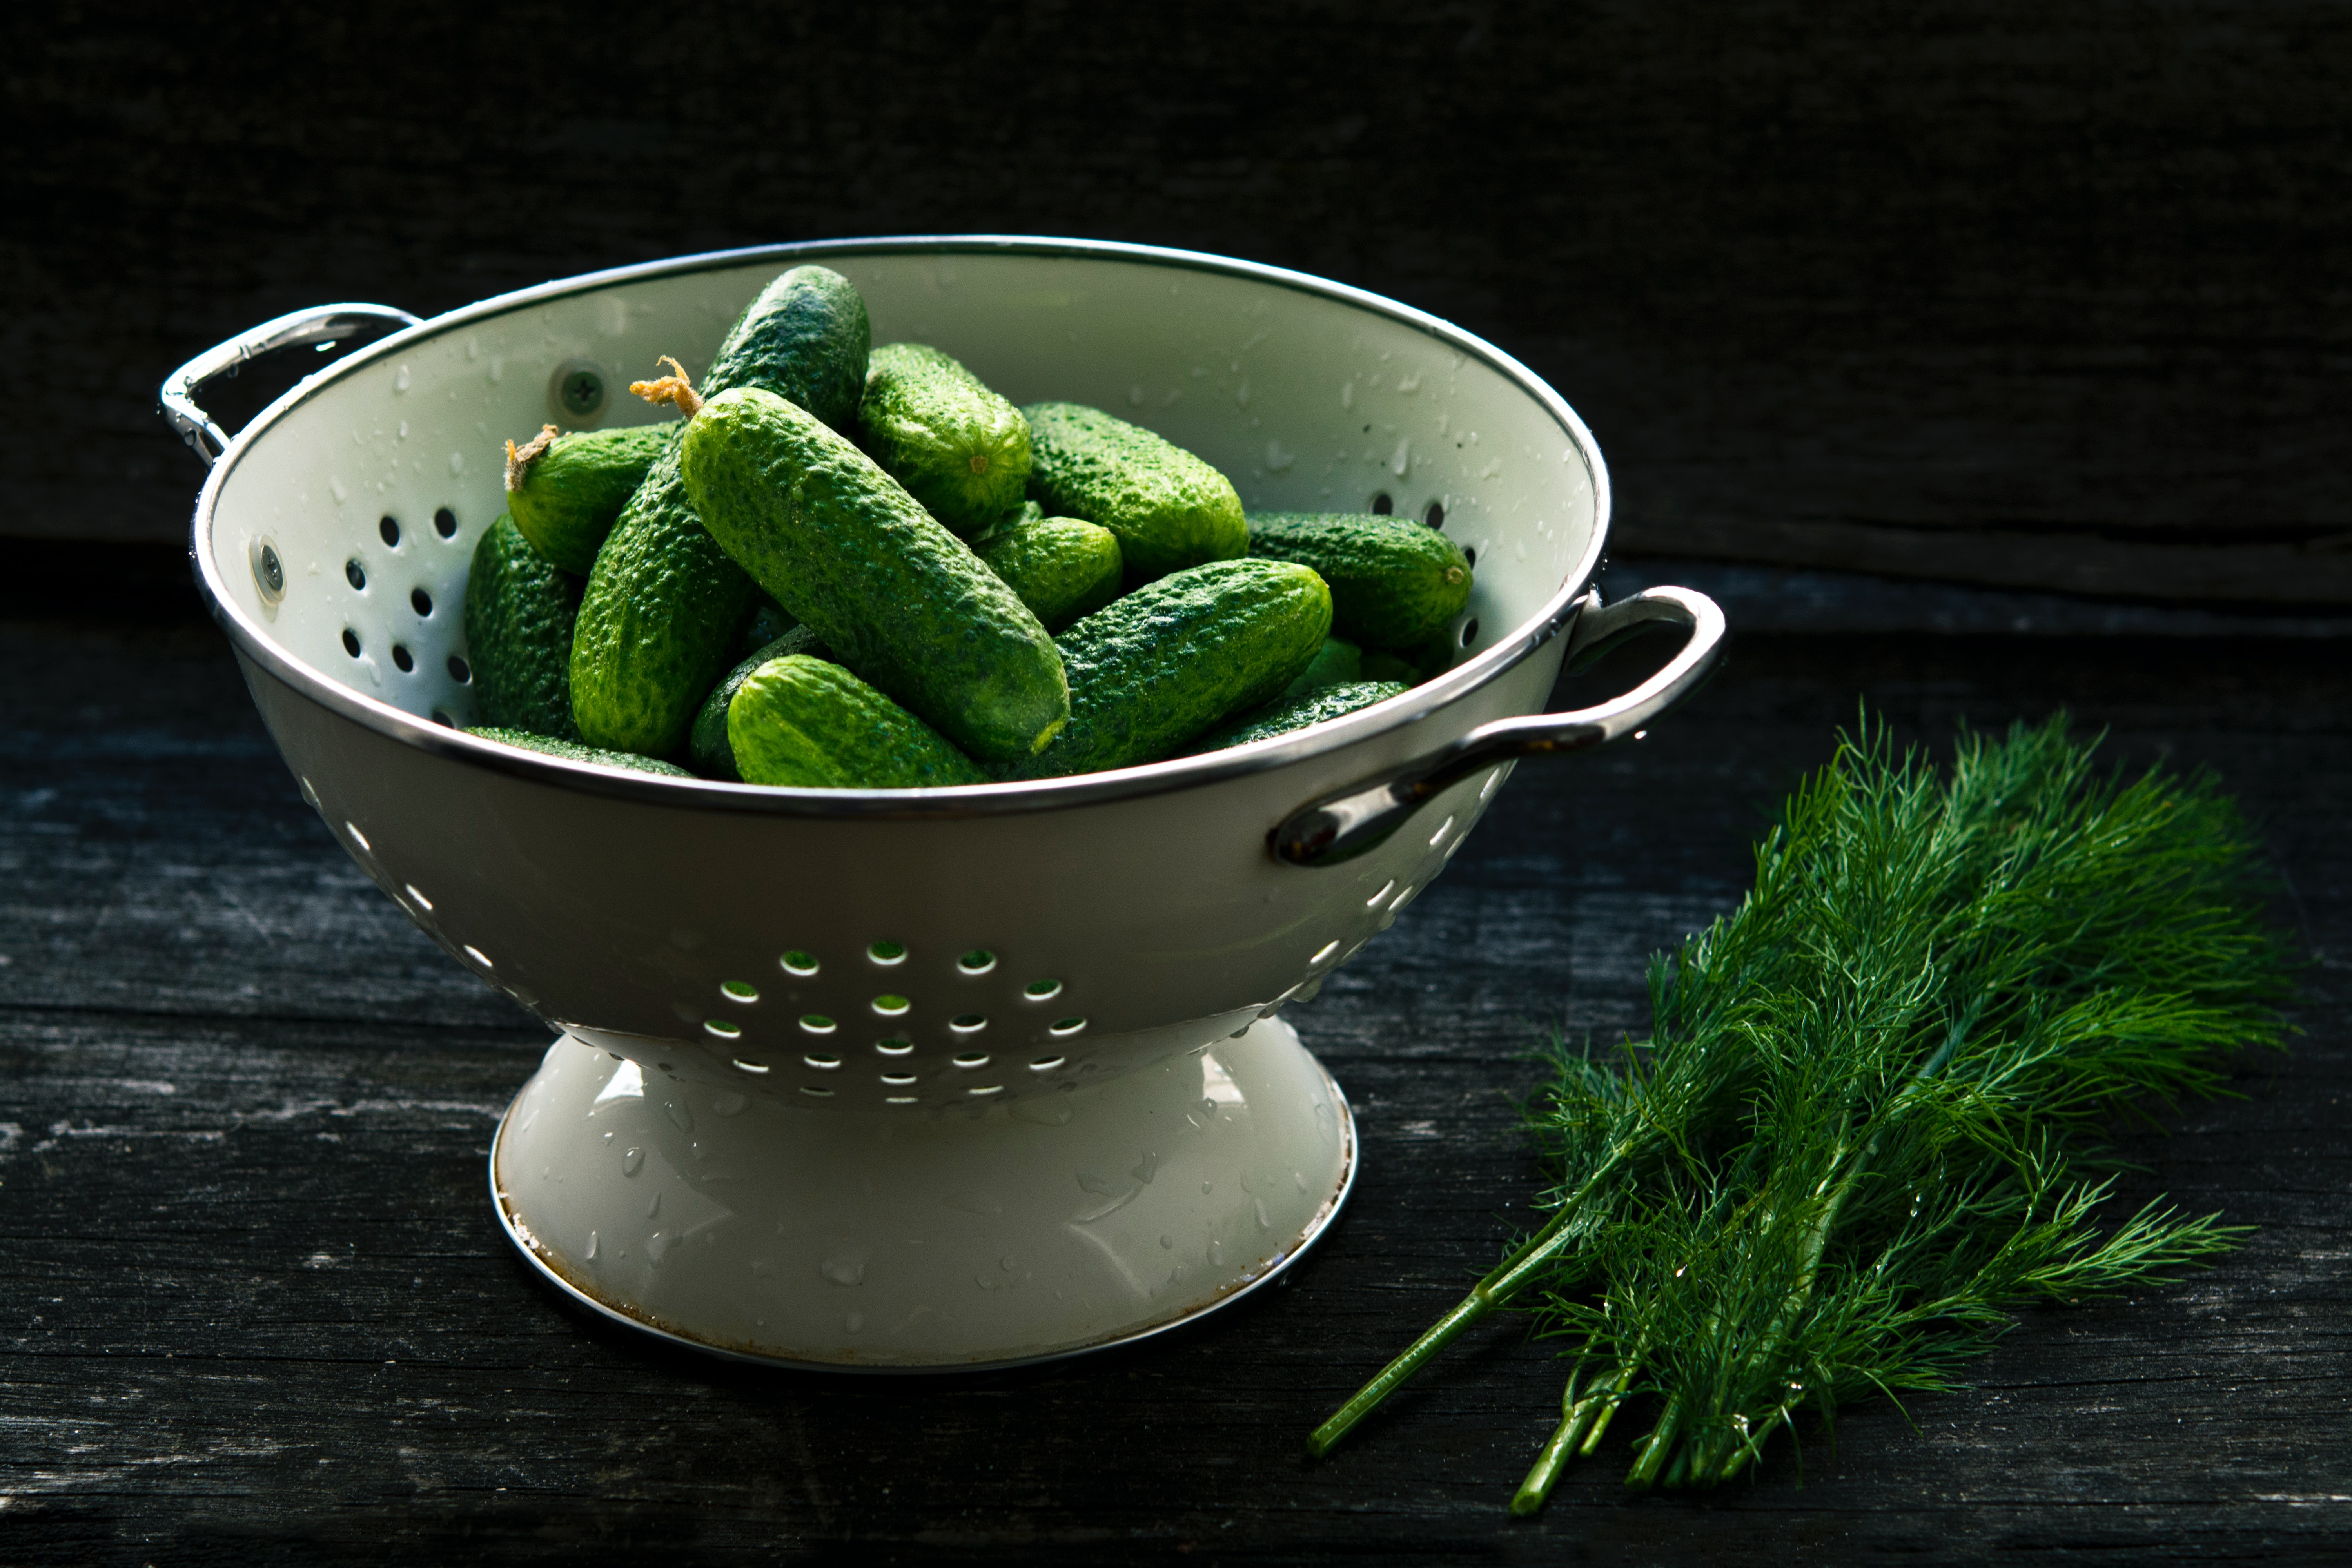 Get Pickled